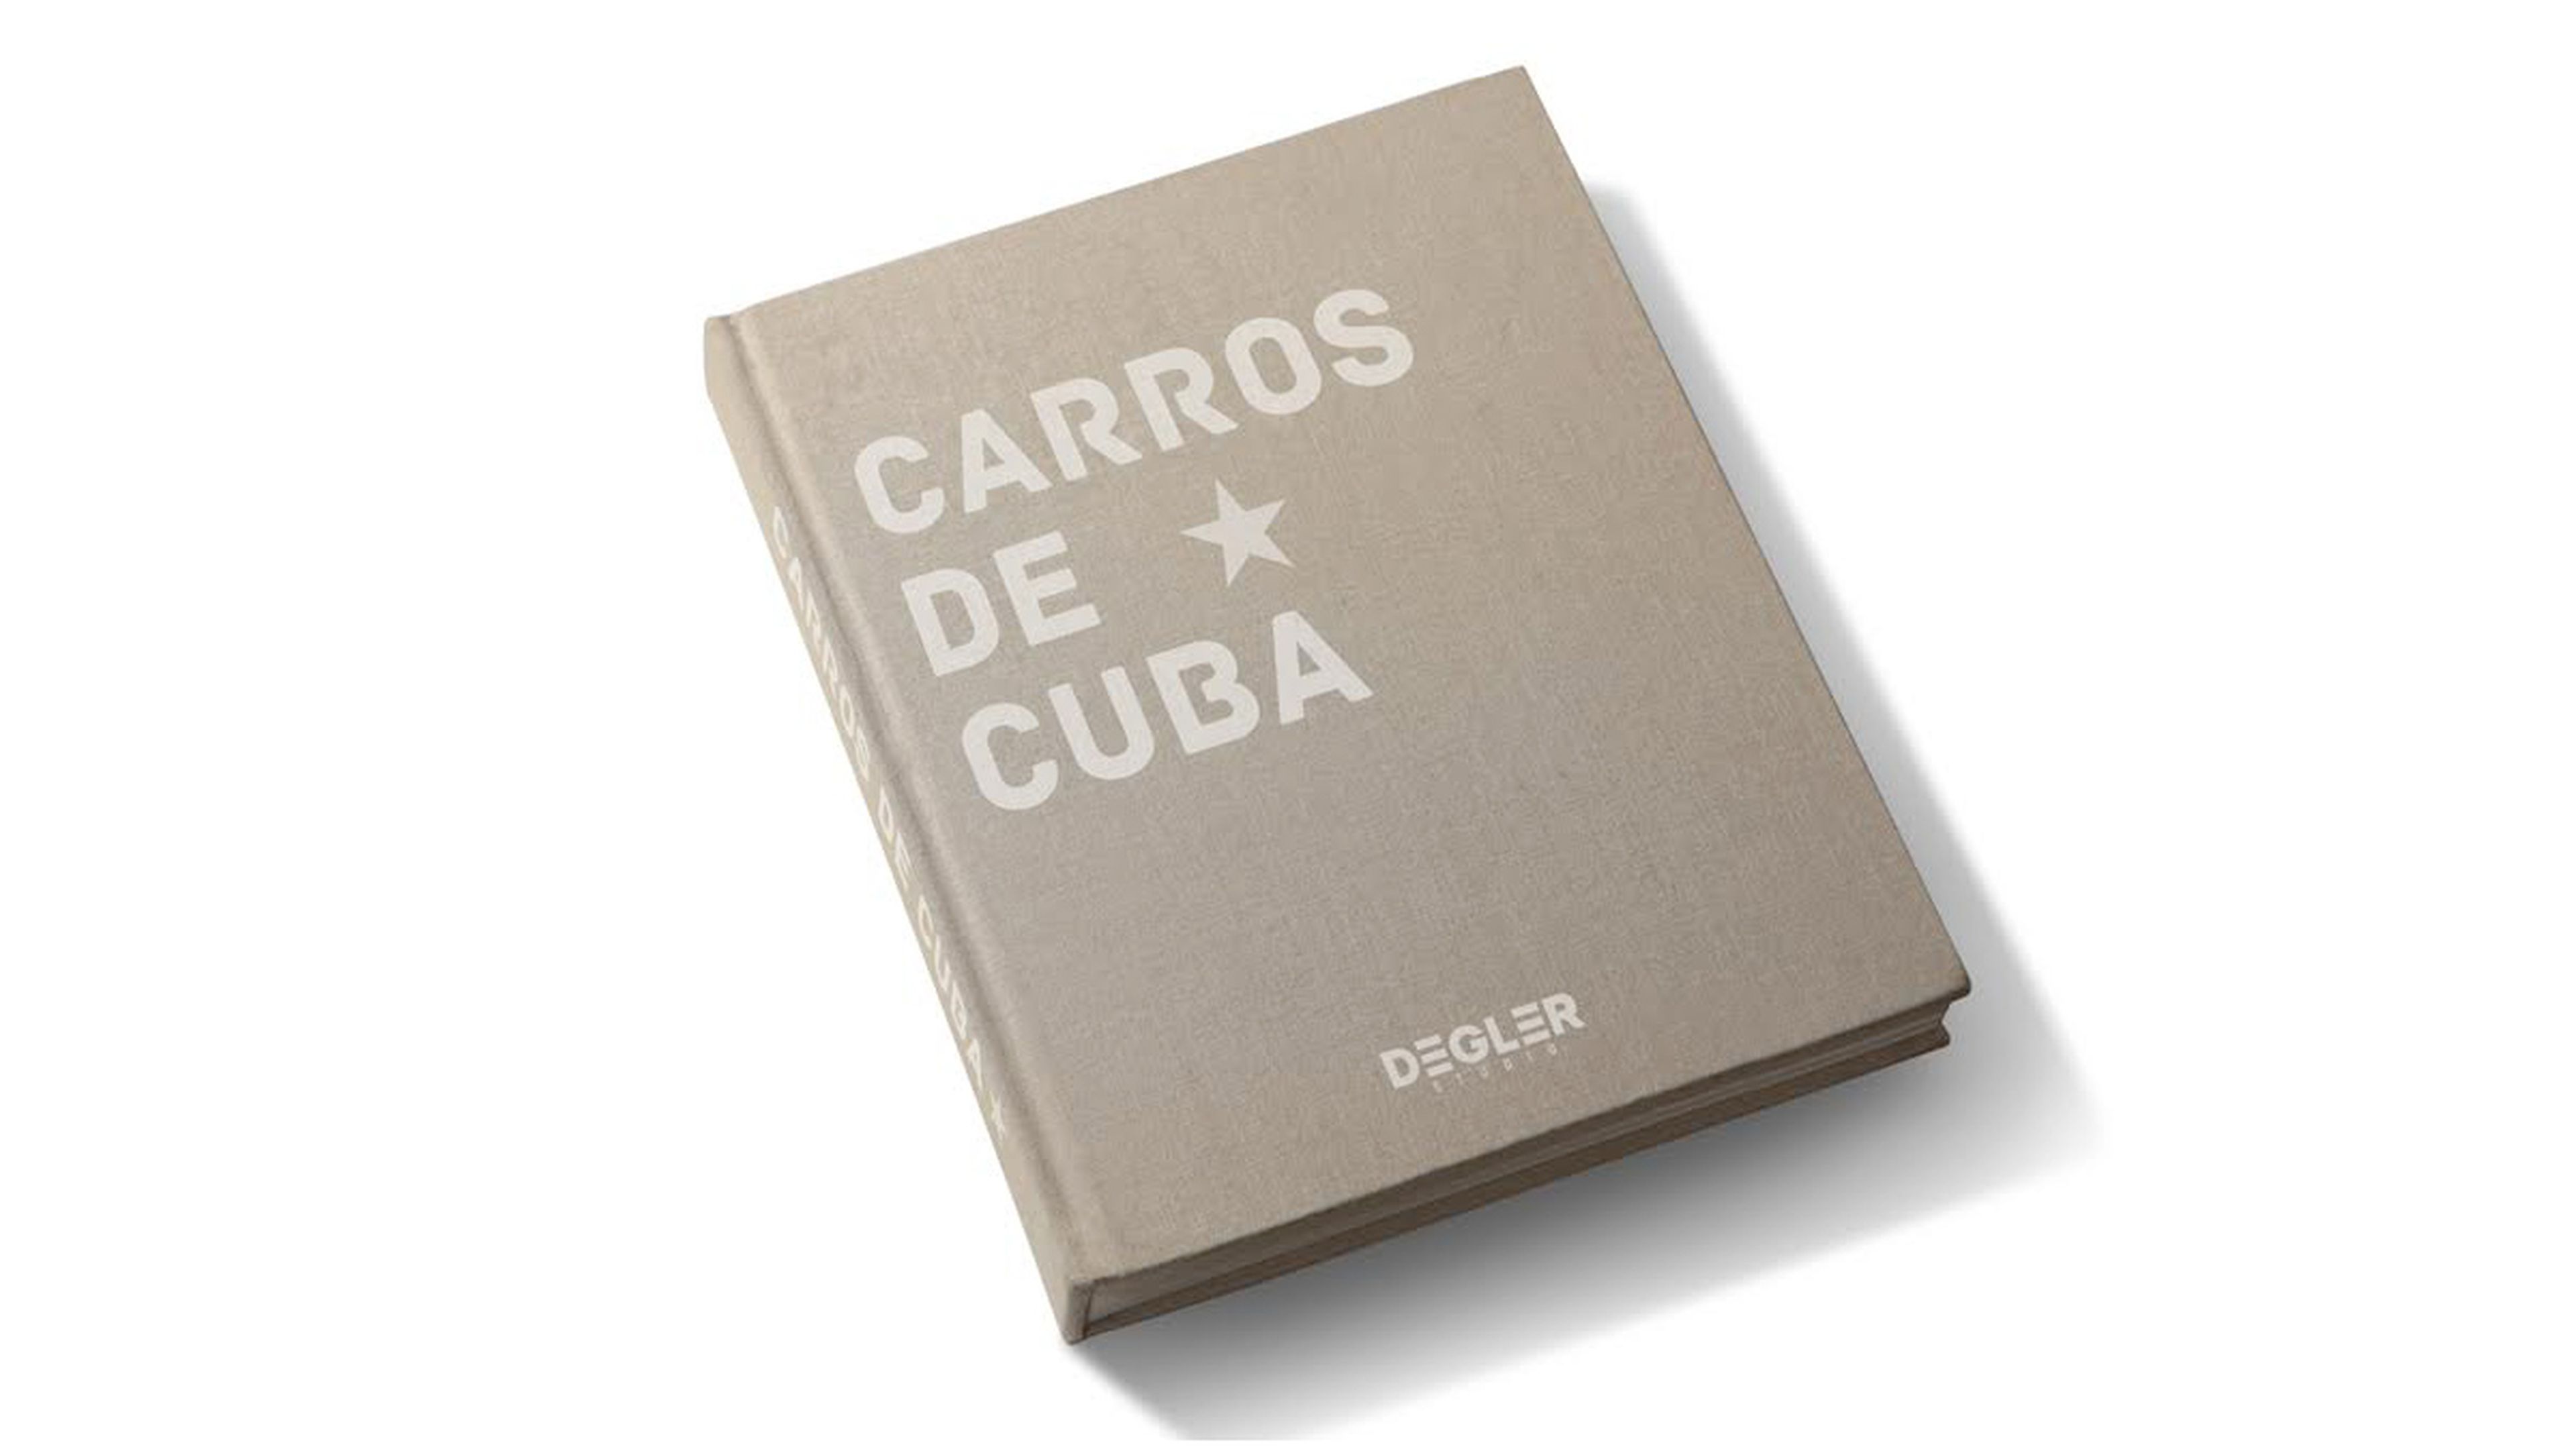 Portada del libro 'Carros de Cuba'